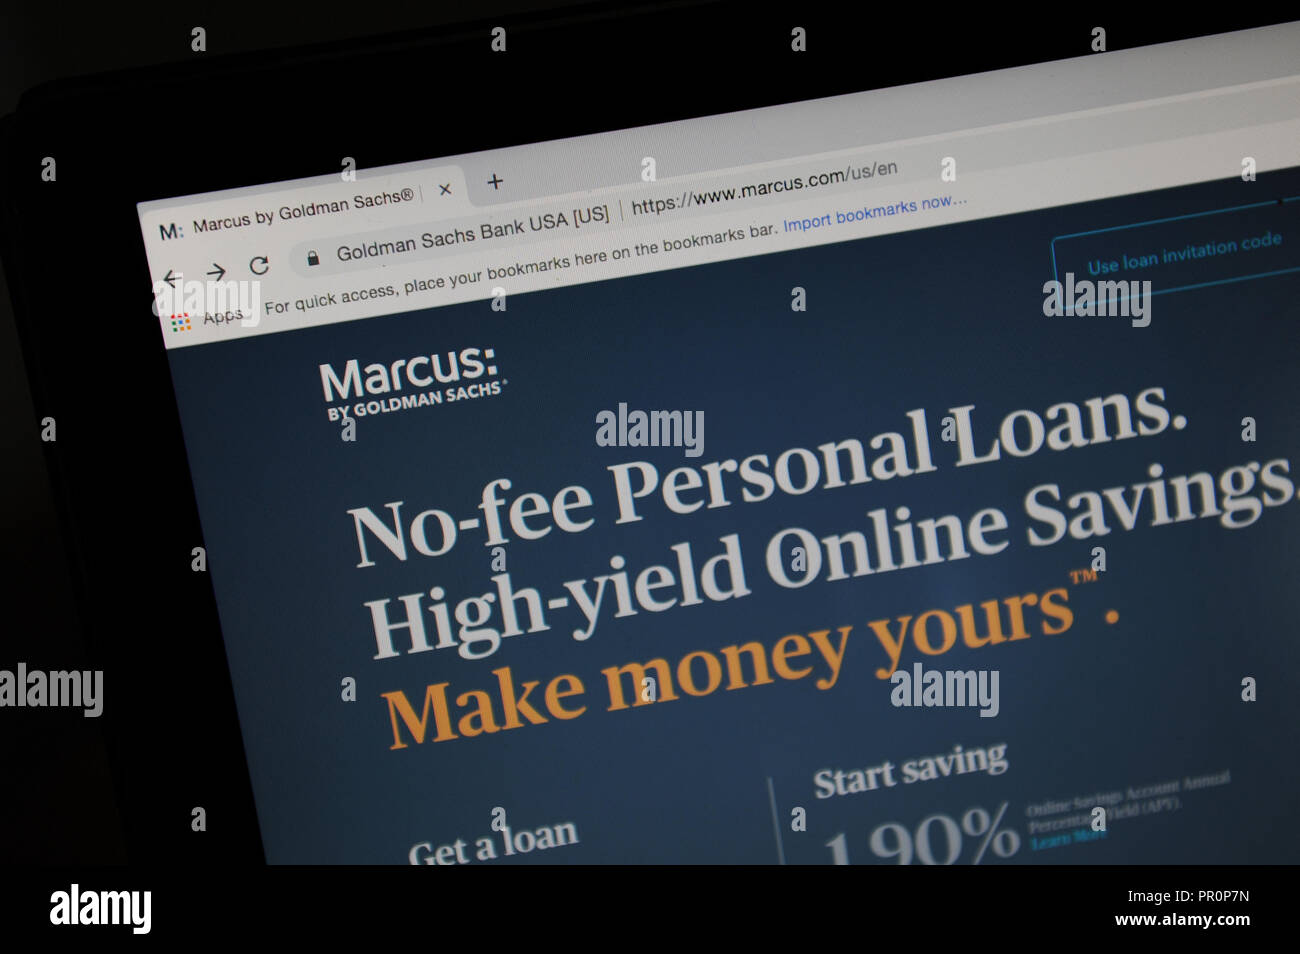 El sitio de internet de American del Banco Marcus por Goldman Sachs en un ordenador Foto de stock